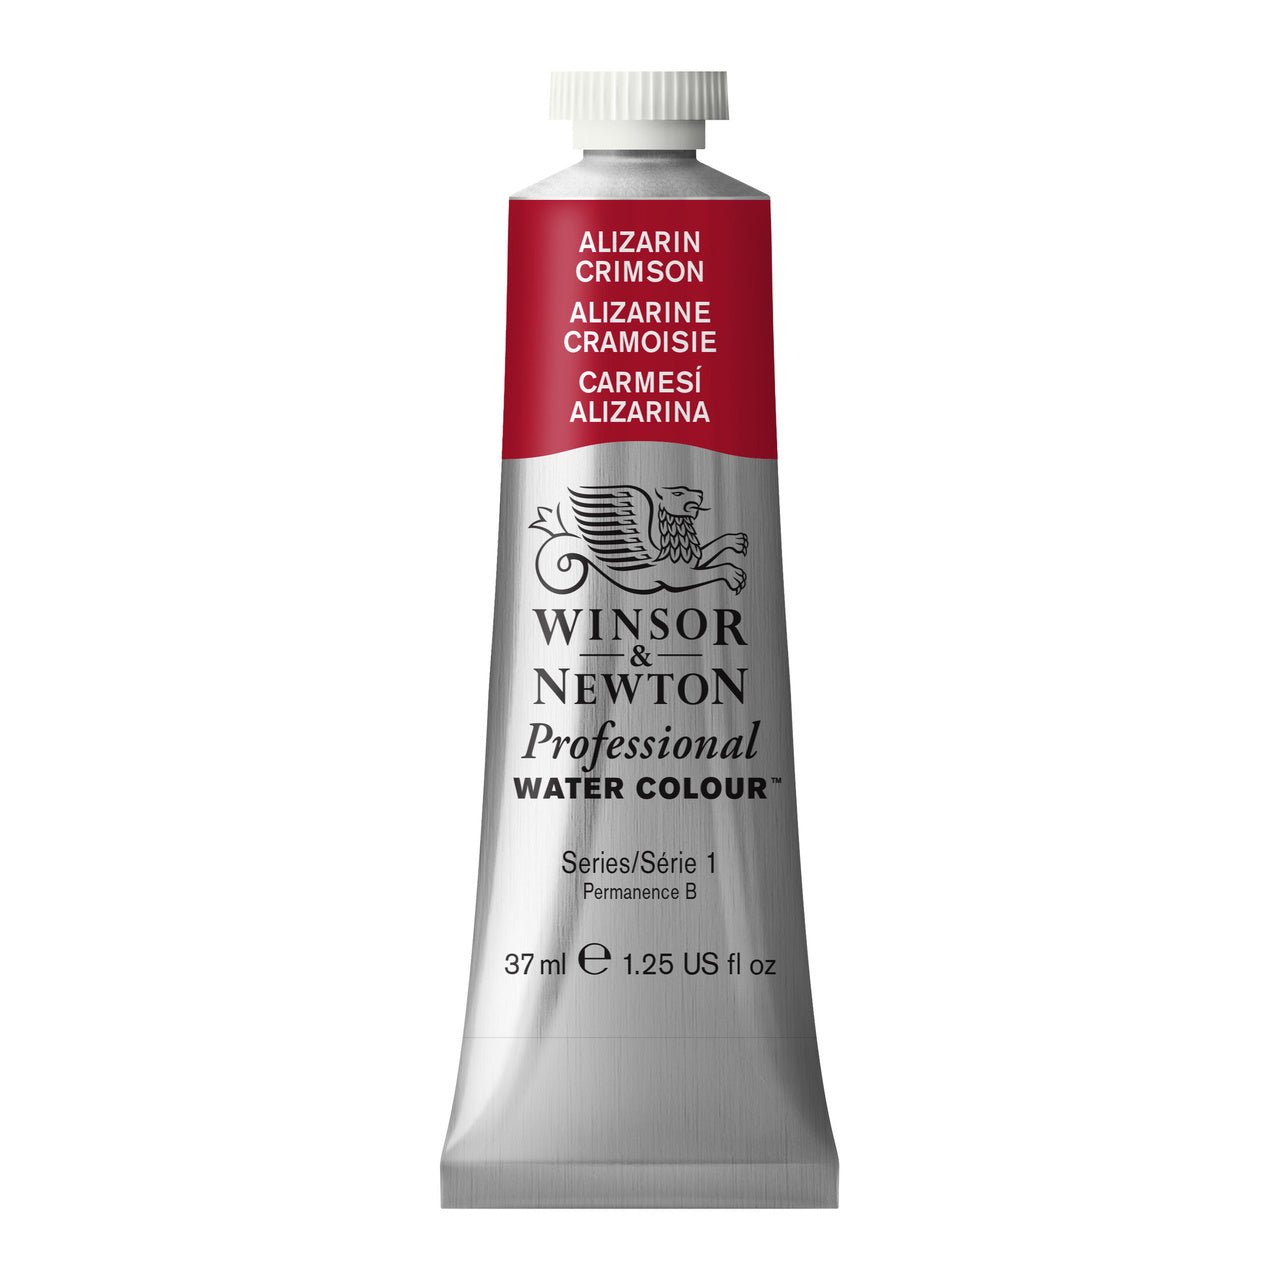 Winsor & Newton Professional Watercolor Alizarin Crimson 37ml - merriartist.com